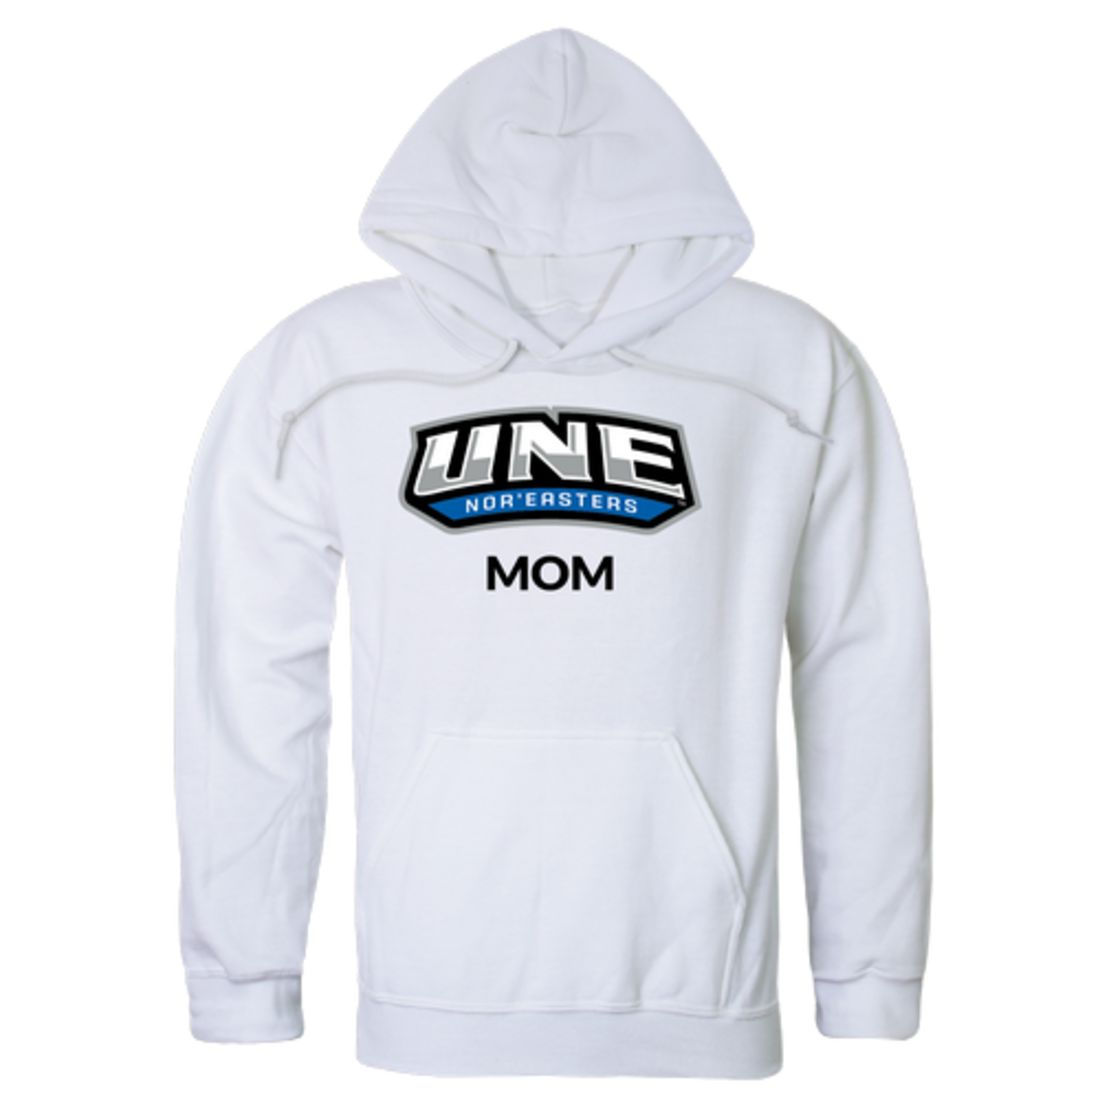 University of New England Nor'easters Mom Fleece Hoodie Sweatshirts